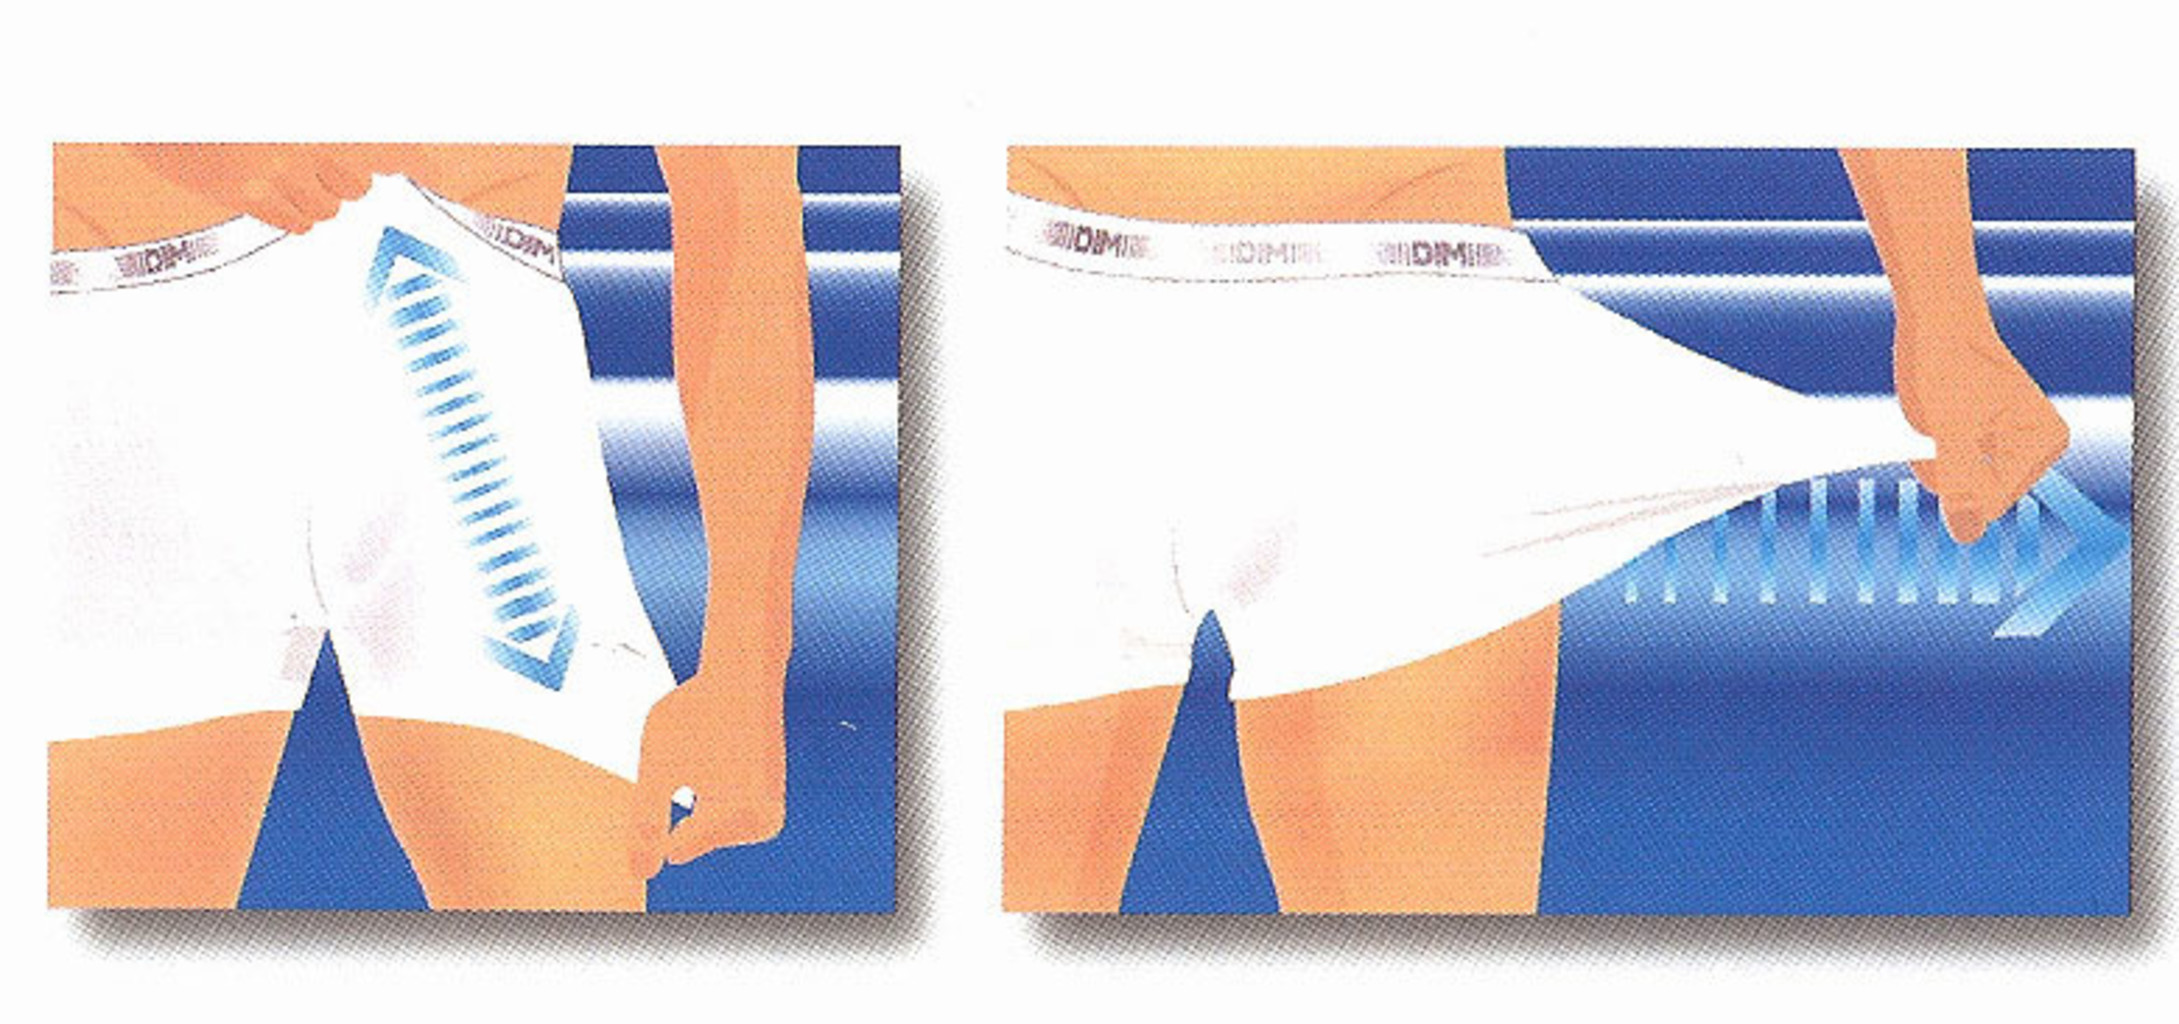 Dim   3D Flex Classic Cotton Stretch 2 delig boxershortset  kleur zwart